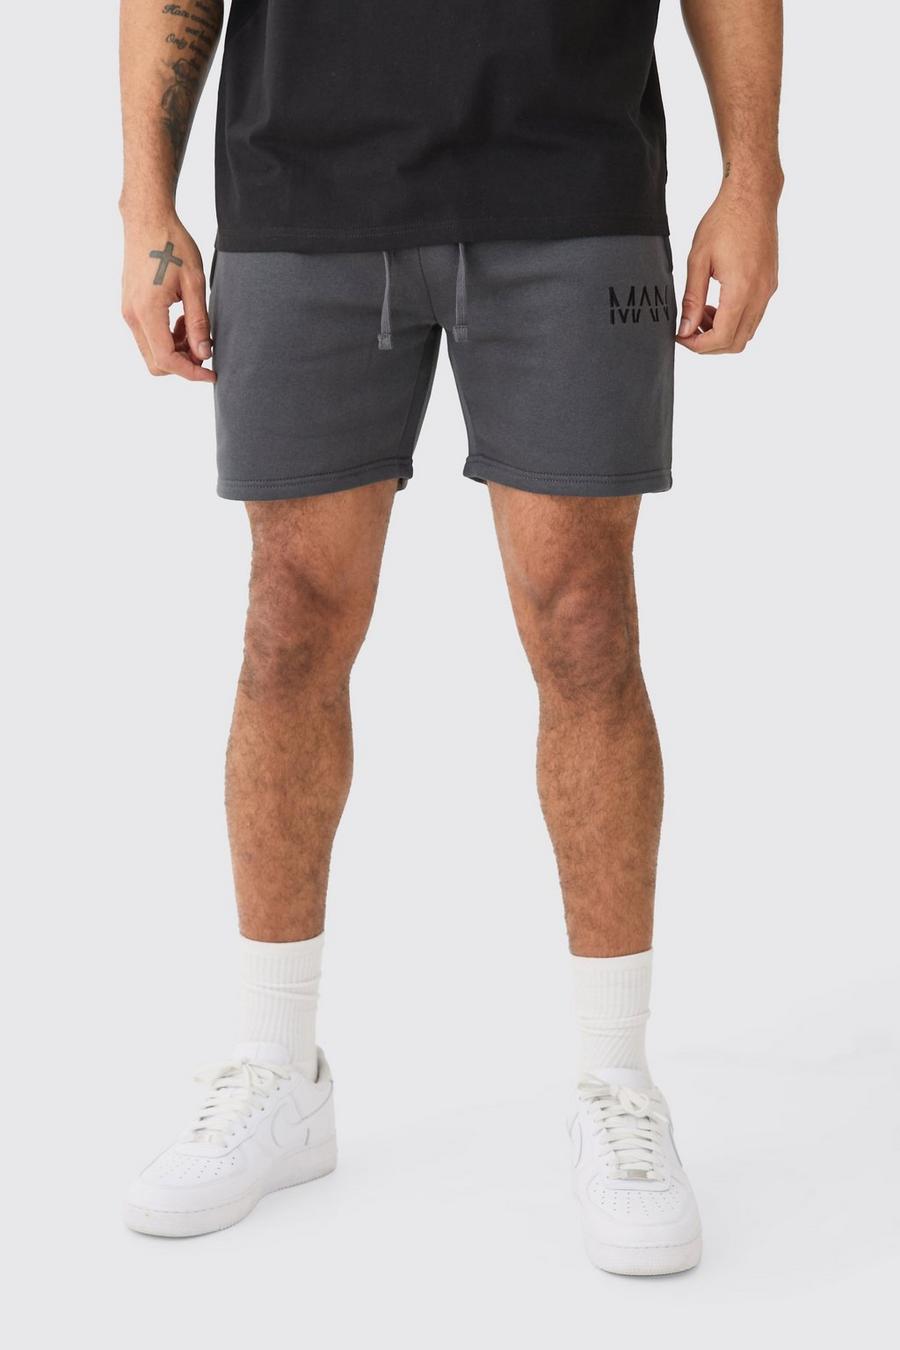 Pantaloncini corti Man Dash Slim Fit, Charcoal image number 1